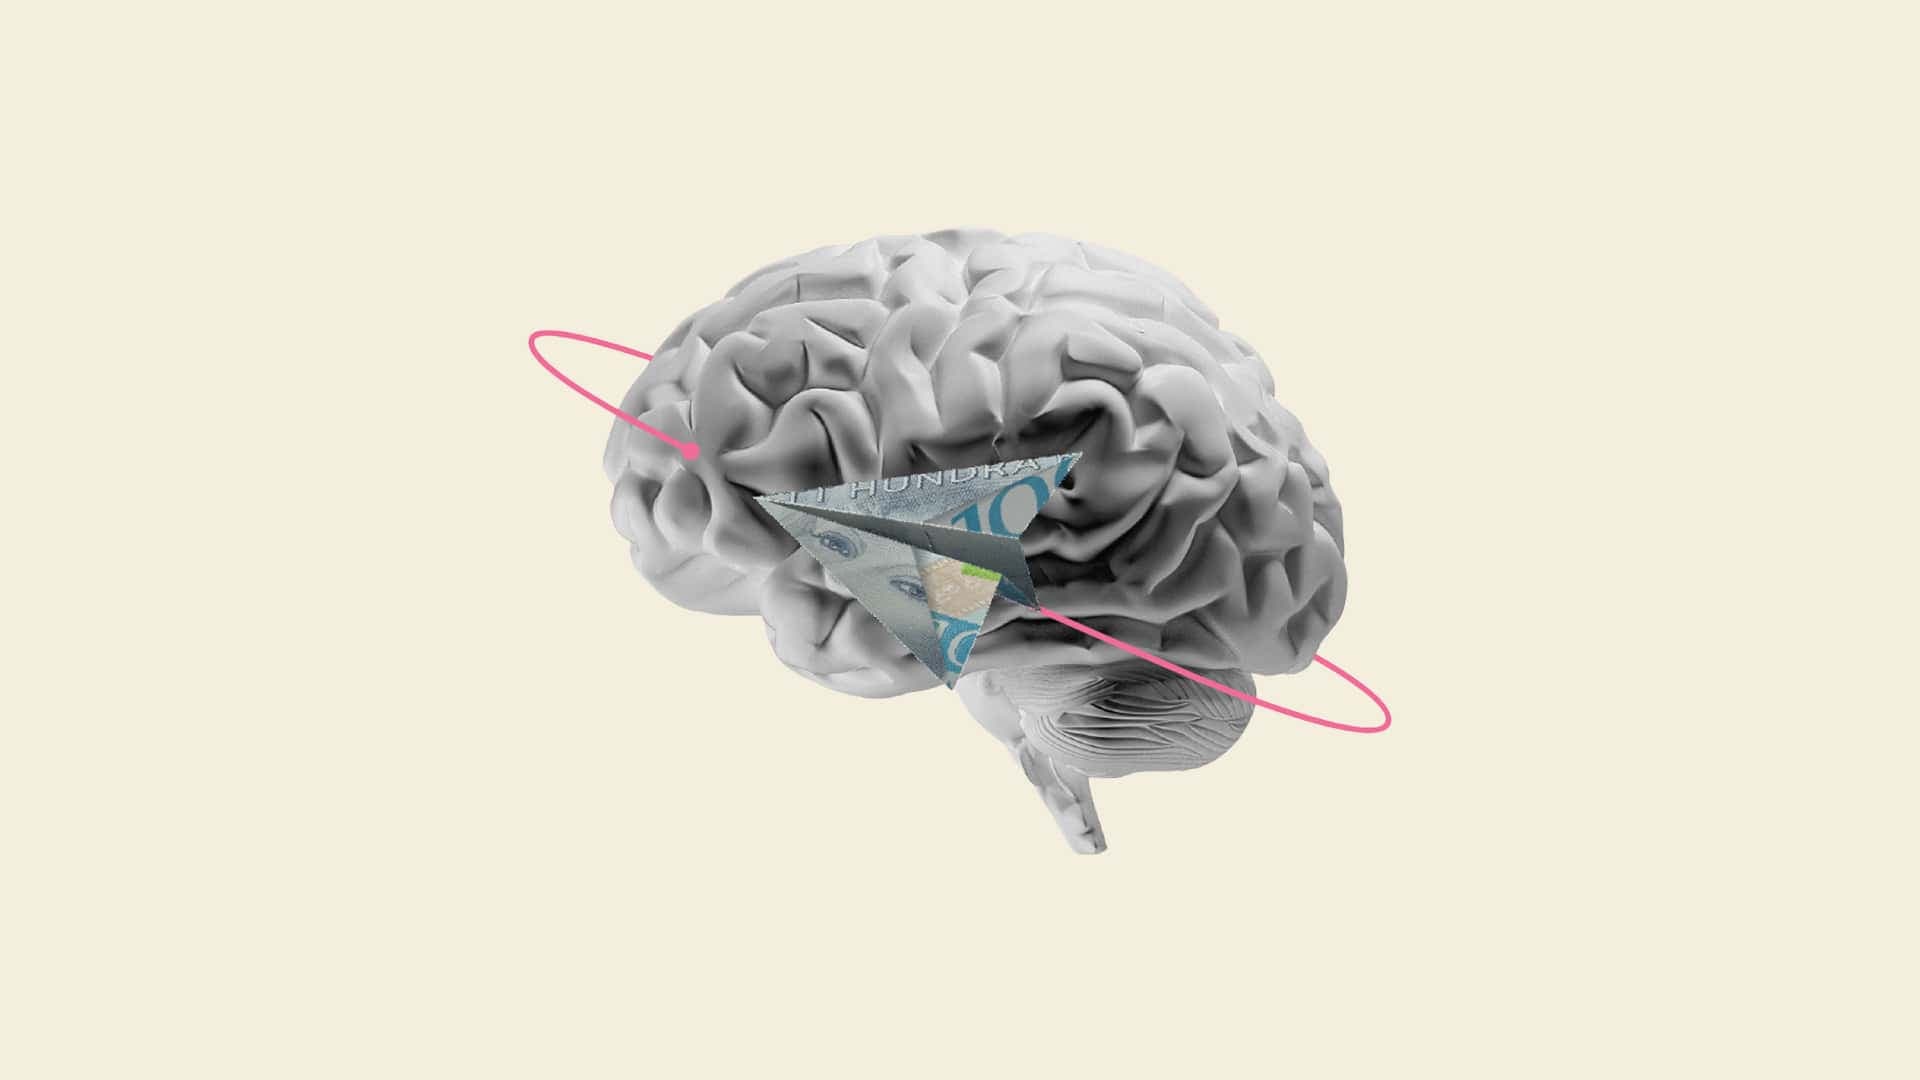 Ett kollage som kombinerar en hjärna med ett pappersflygplan gjort av en hundralapp mot beige bakgrund